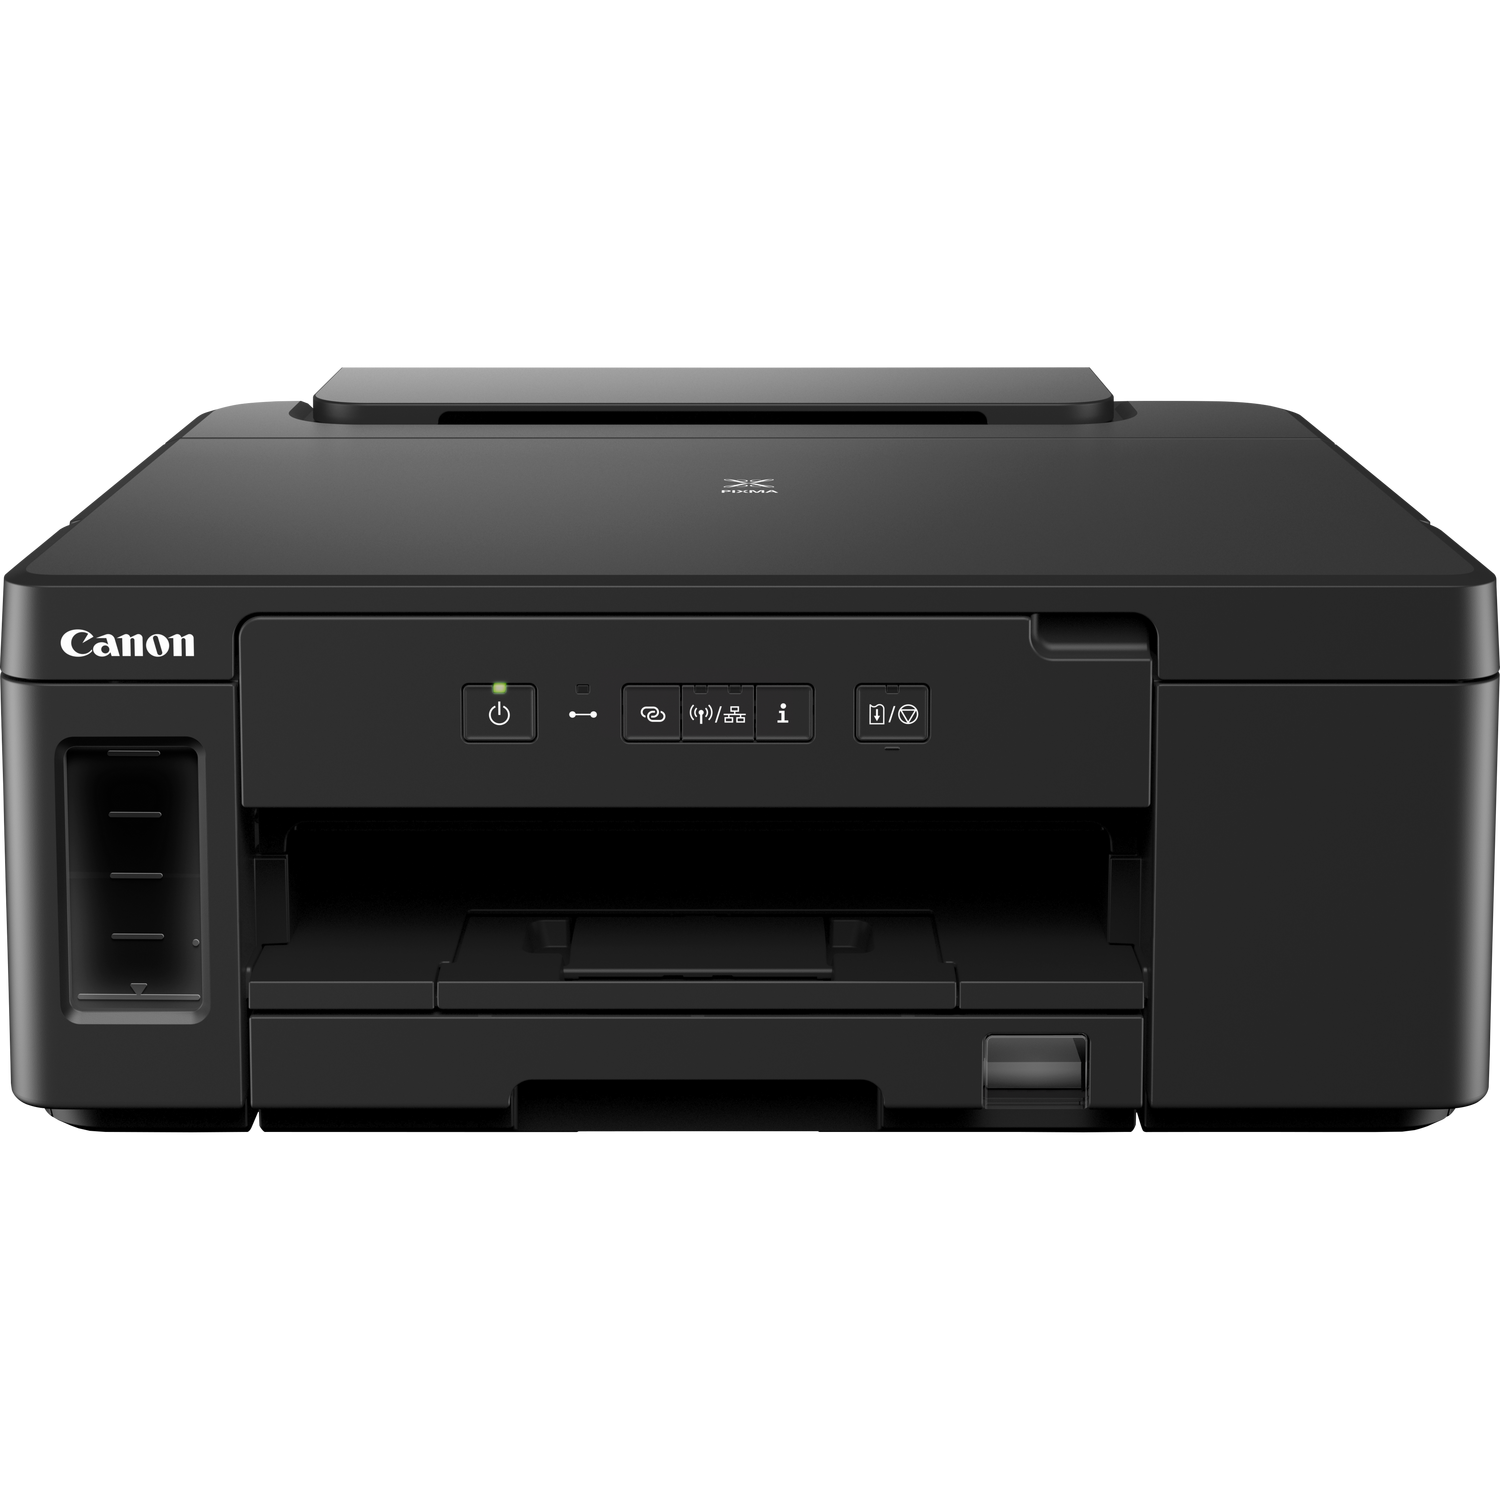 zacht verschijnen cultuur Canon PIXMA GM2050 MegaTank-printer met navulbare inkttanks, zwart-wit in  Wi-Fi printers — Canon Belgie Store